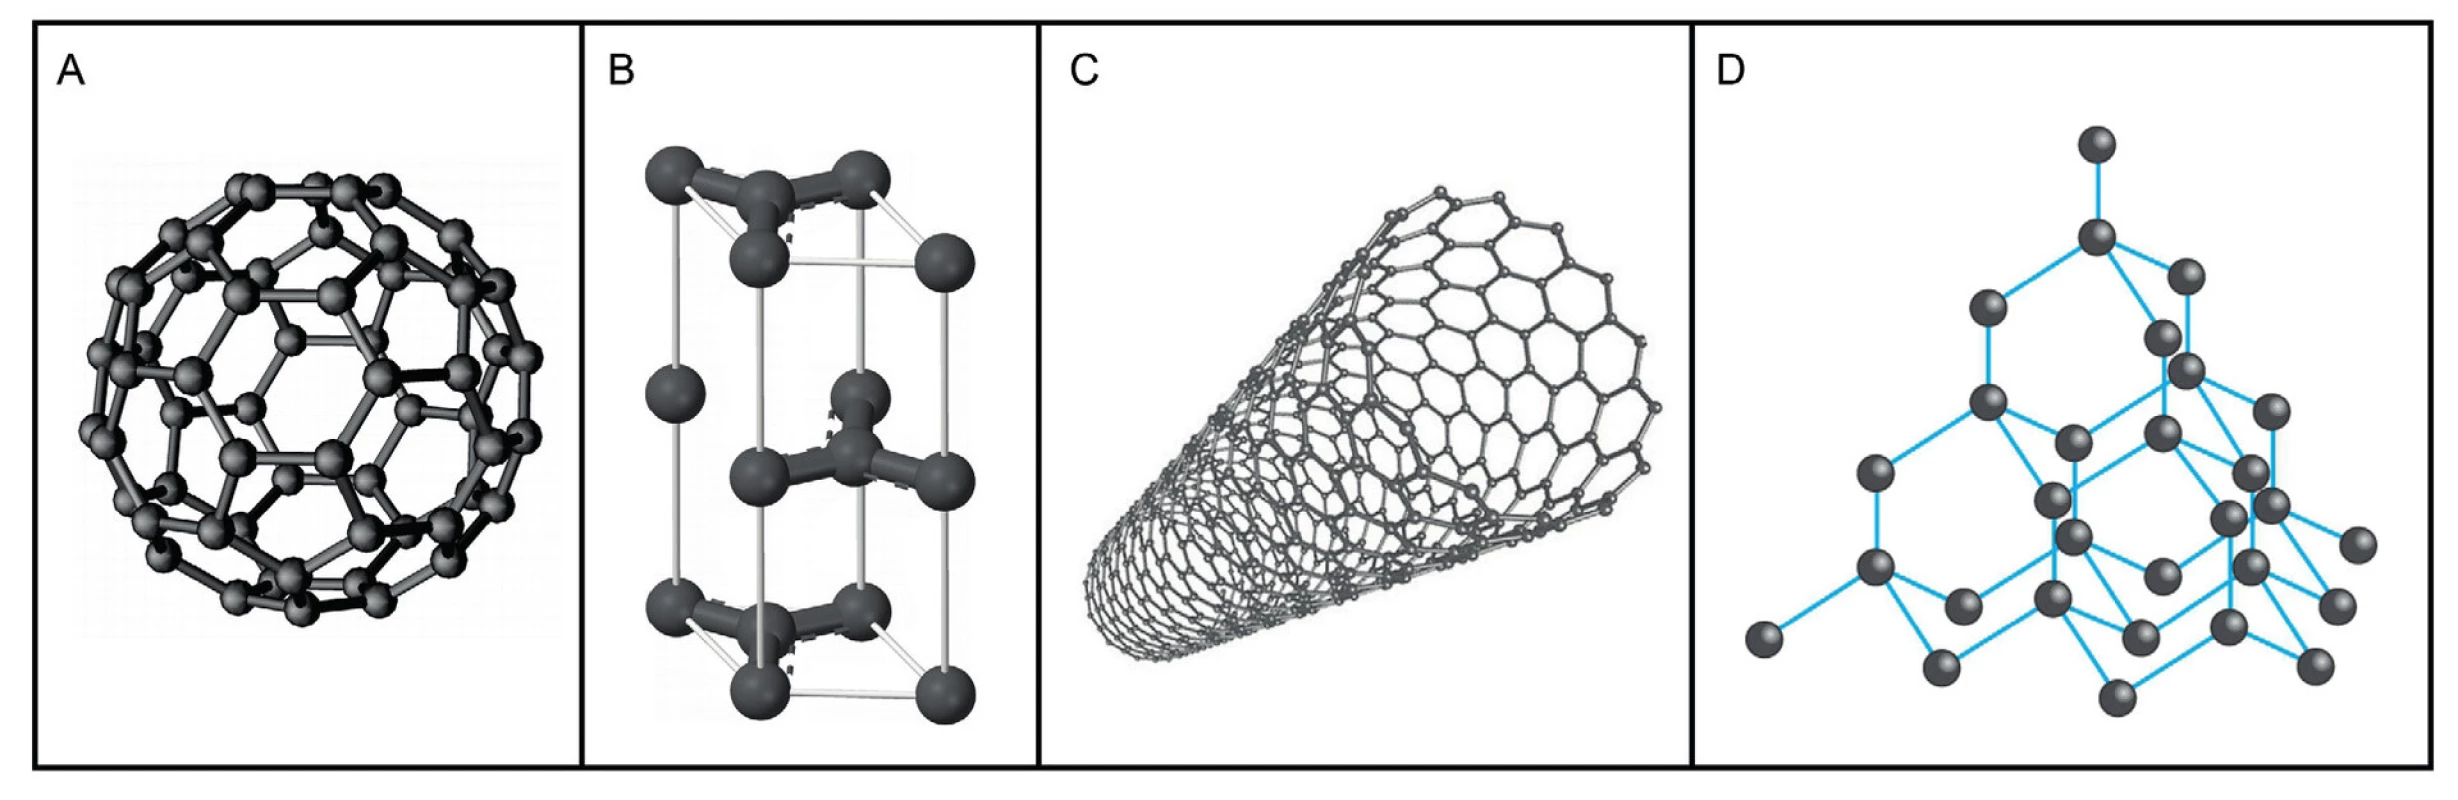 Různé modifikace uhlíku: A – molekula fullerenu C&lt;sub&gt;60&lt;/sub&gt;, tvořená sítí uhlíkových atomů uspořádaných do šestiúhelníků doplněných pětiúhelníky, B – grafit (tuha), nejčastější přírodní modifikace složená z vrstev, které jsou tvořeny uhlíky navázanými do šestiúhelníků, C – uhlíkové nanotrubice, D – diamant je tvořen uhlíkem krystalizujícím v krychlové soustavě